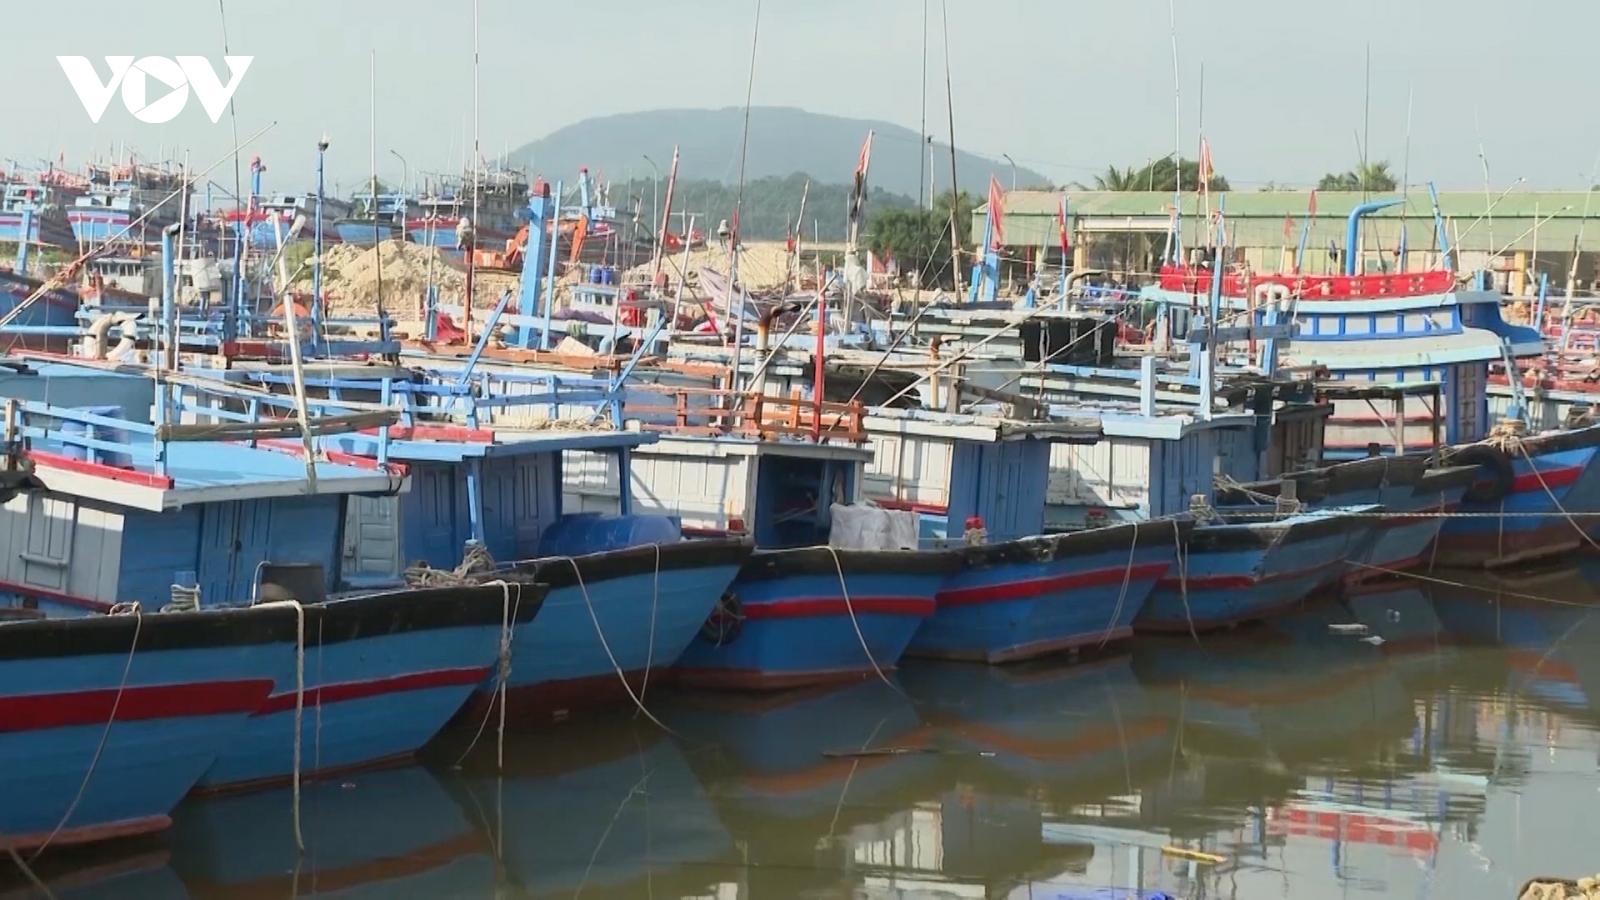 Quảng Ngãi mở đợt cao điểm 180 ngày chống khai thác hải sản bất hợp pháp